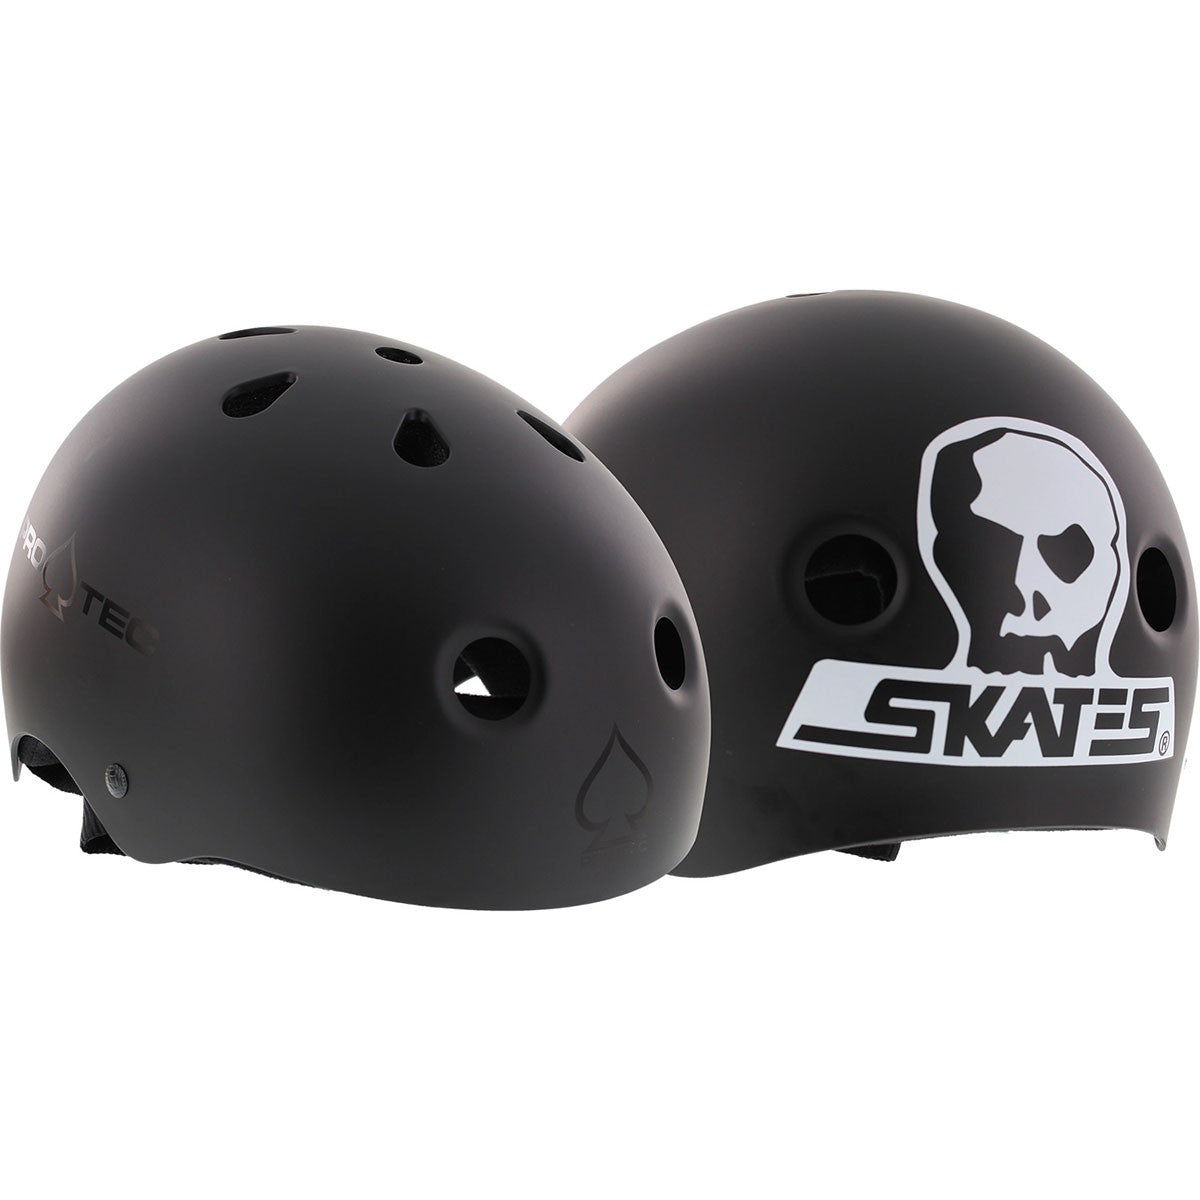 Protec Skate Classic Certified Black Skull Skates